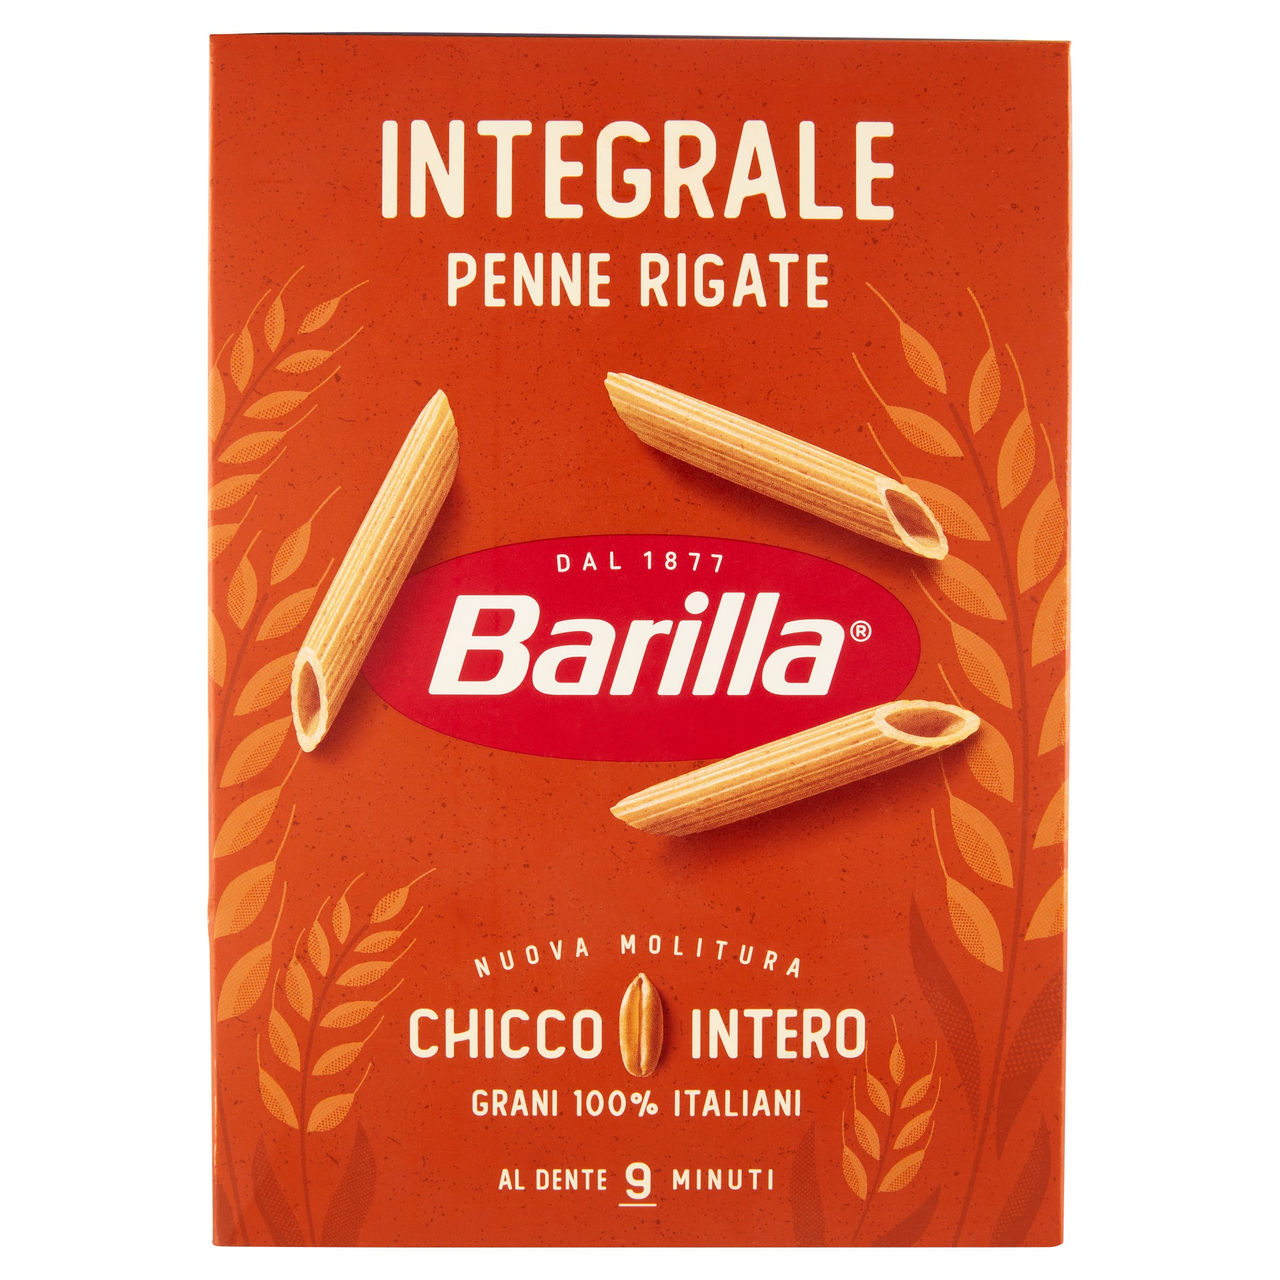 Barilla Integrale Penne Rigate 500 g